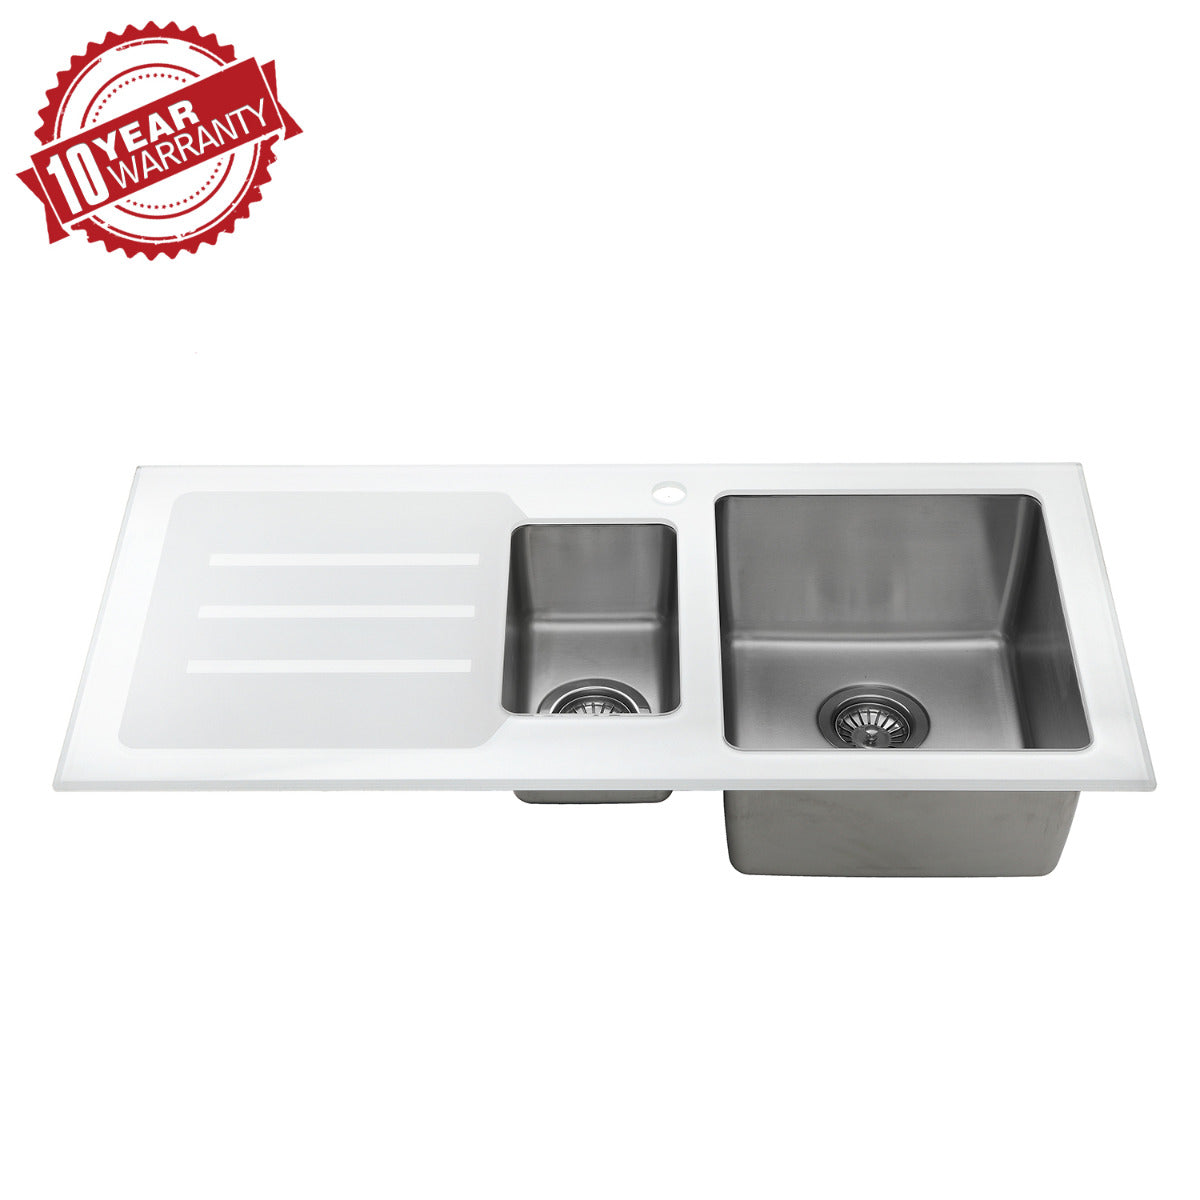 JassferryJASSFERRY Kitchen Sink Stainless Steel 1.5 Bowl White Glass Lefthand DrainerKitchen Sinks